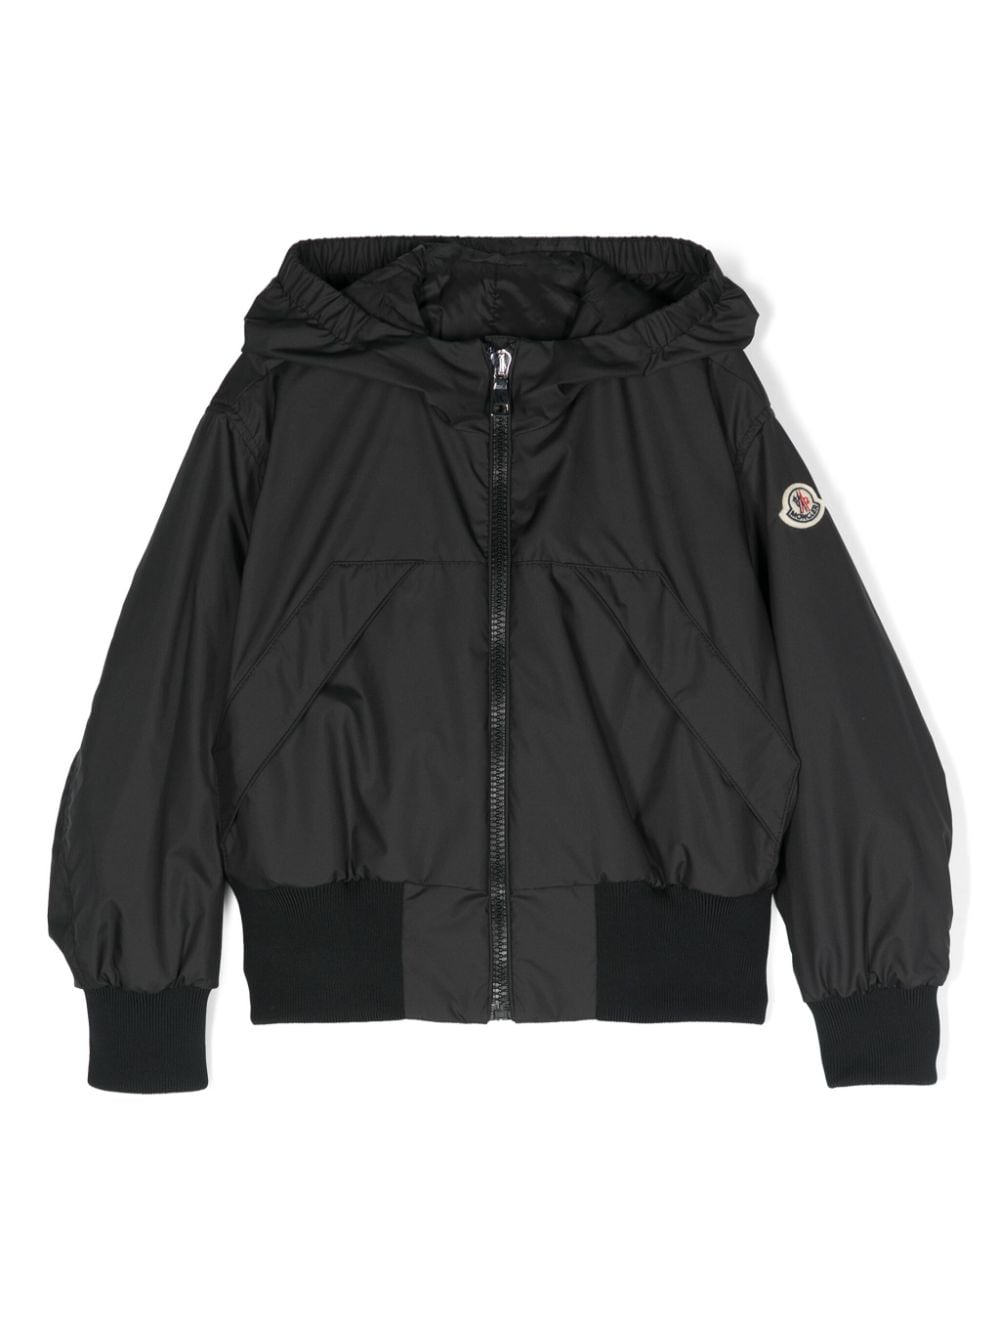 Moncler Enfant hooded bomber jacket - Black von Moncler Enfant